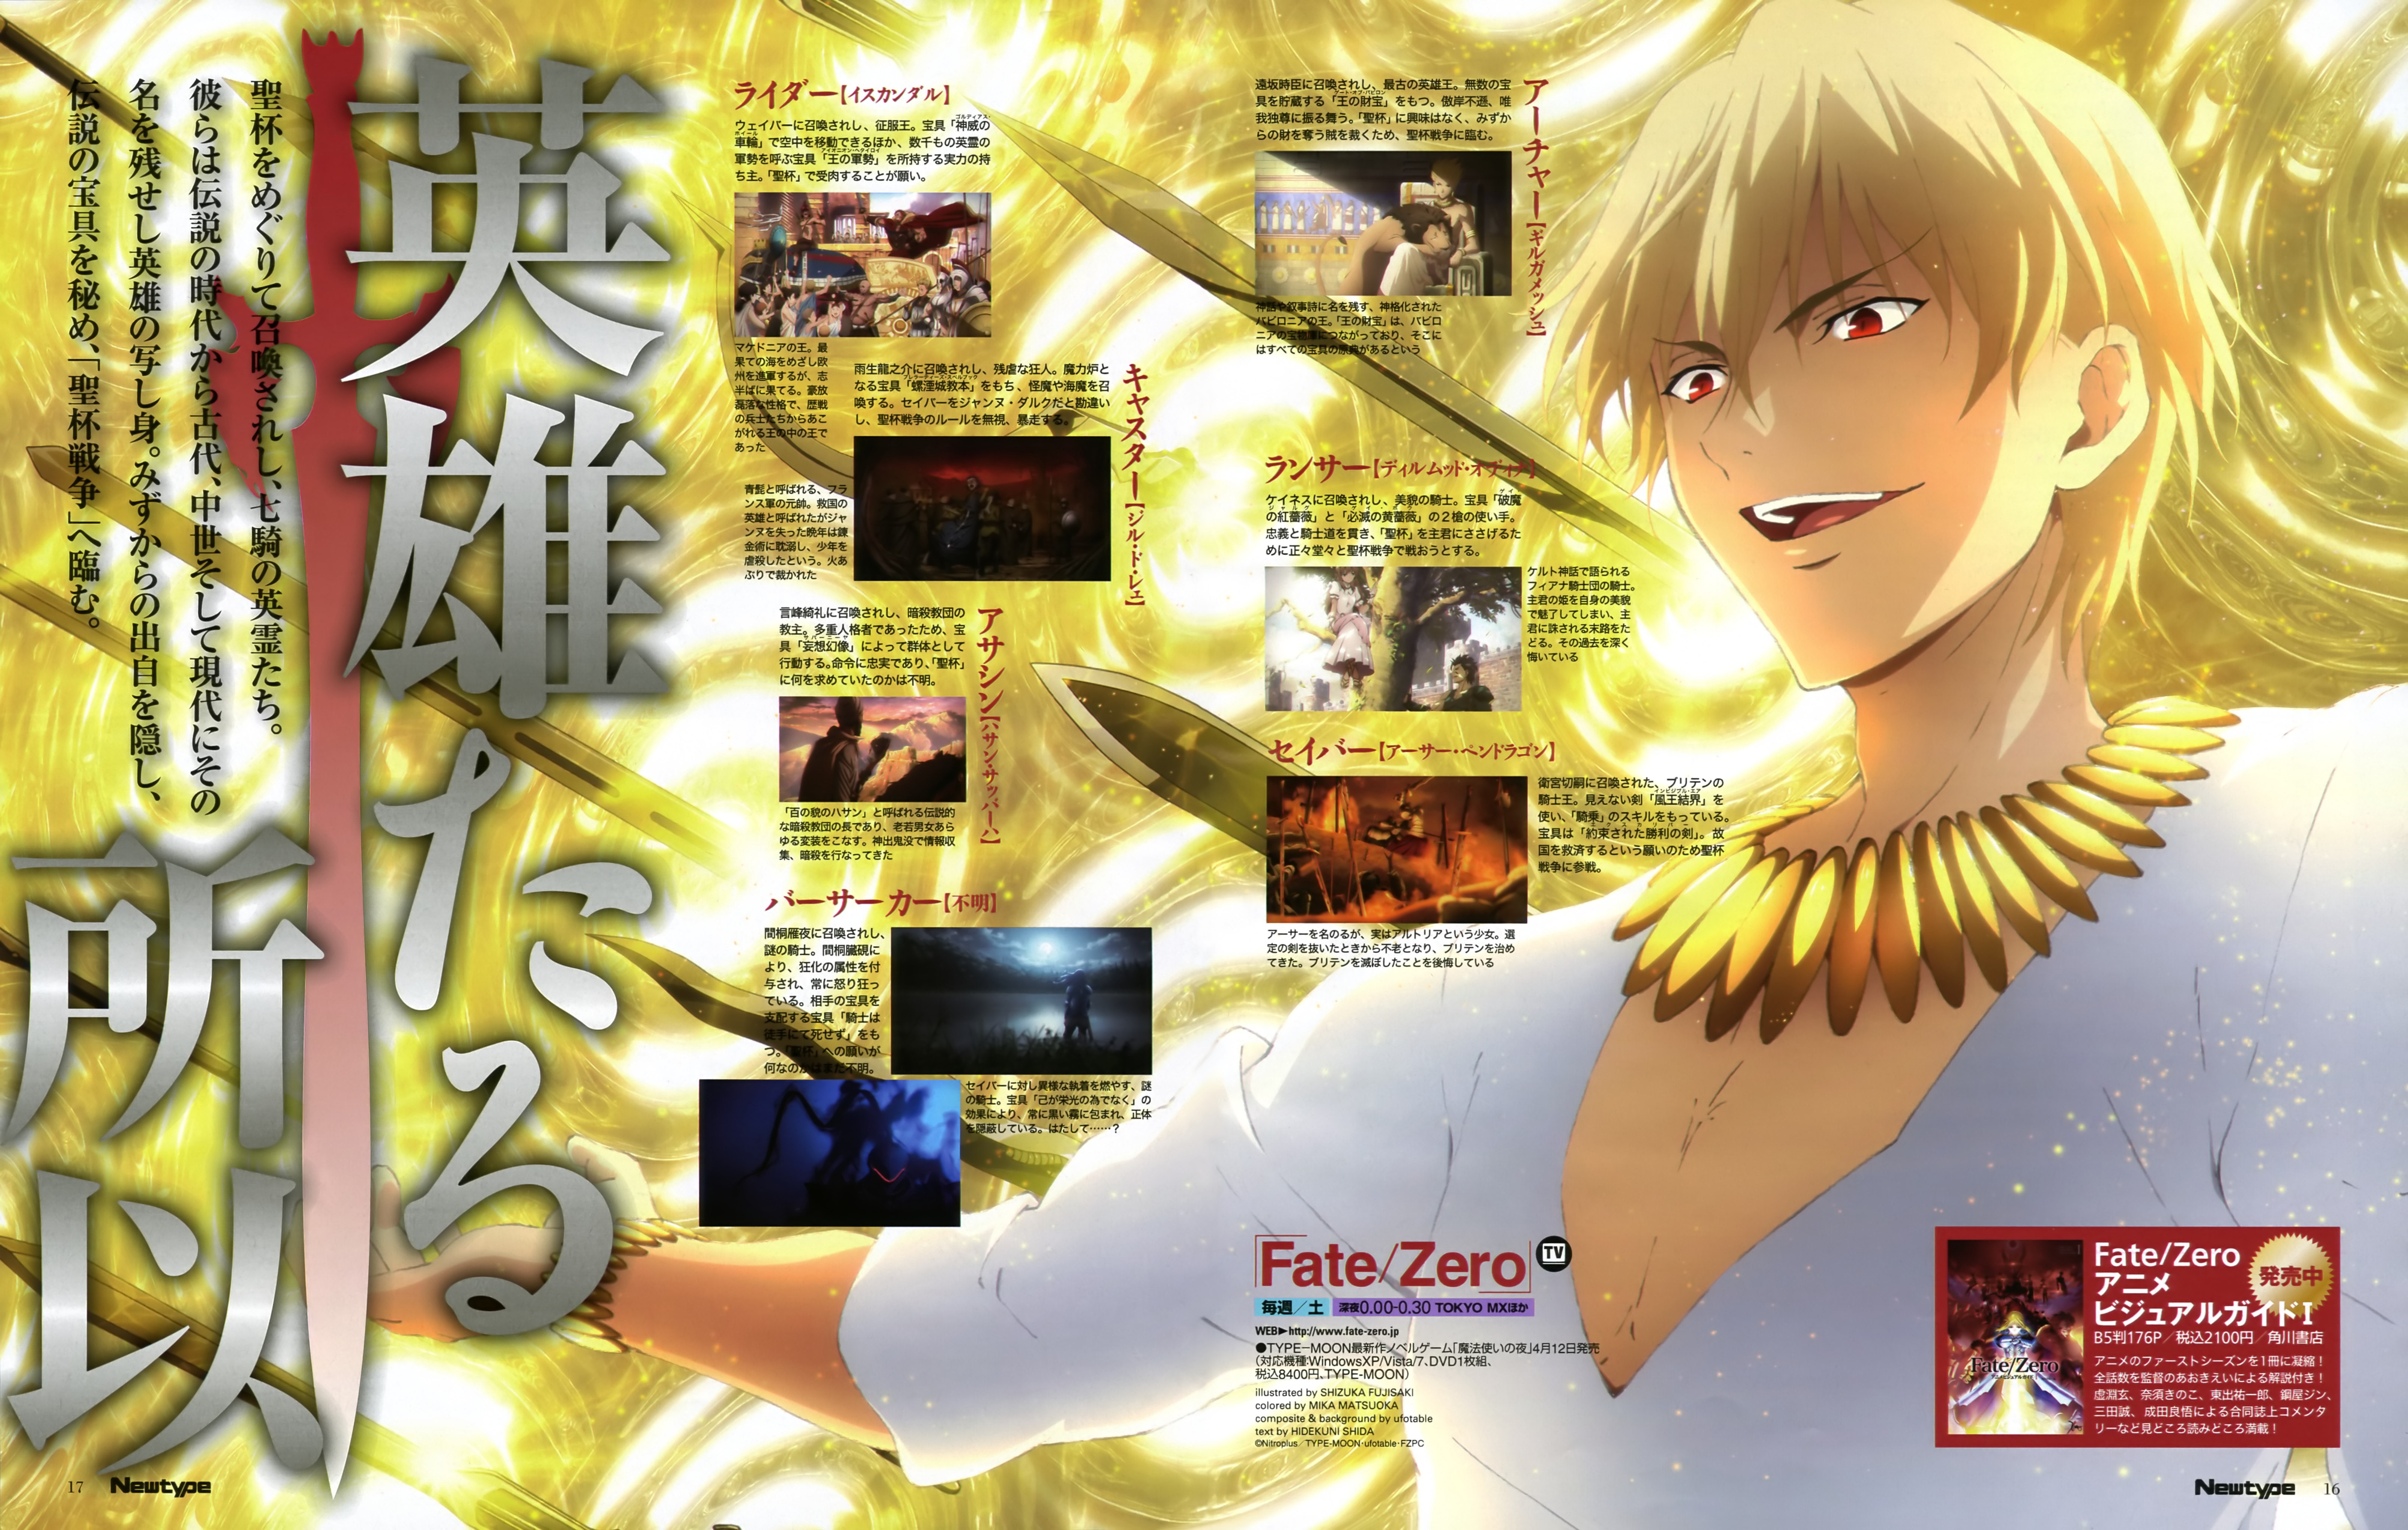 Fujisaki Shizuka Fate Stay Night Fate Zero Gilgamesh Fsn Male Yande Re